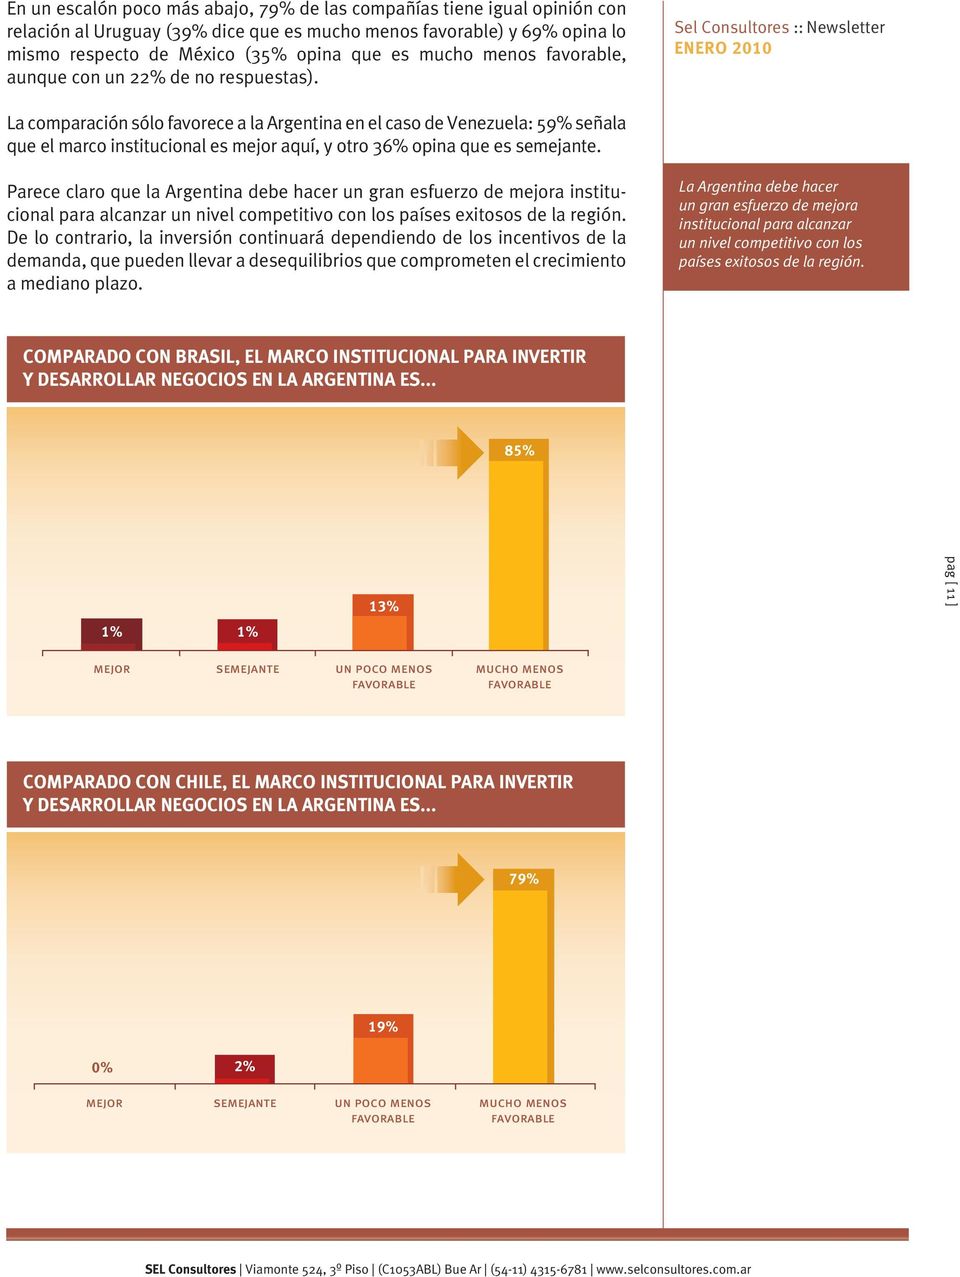 Sel Consultores :: Newsletter La comparación sólo favorece a la Argentina en el caso de Venezuela: 59% señala que el marco institucional es mejor aquí, y otro 36% opina que es semejante.